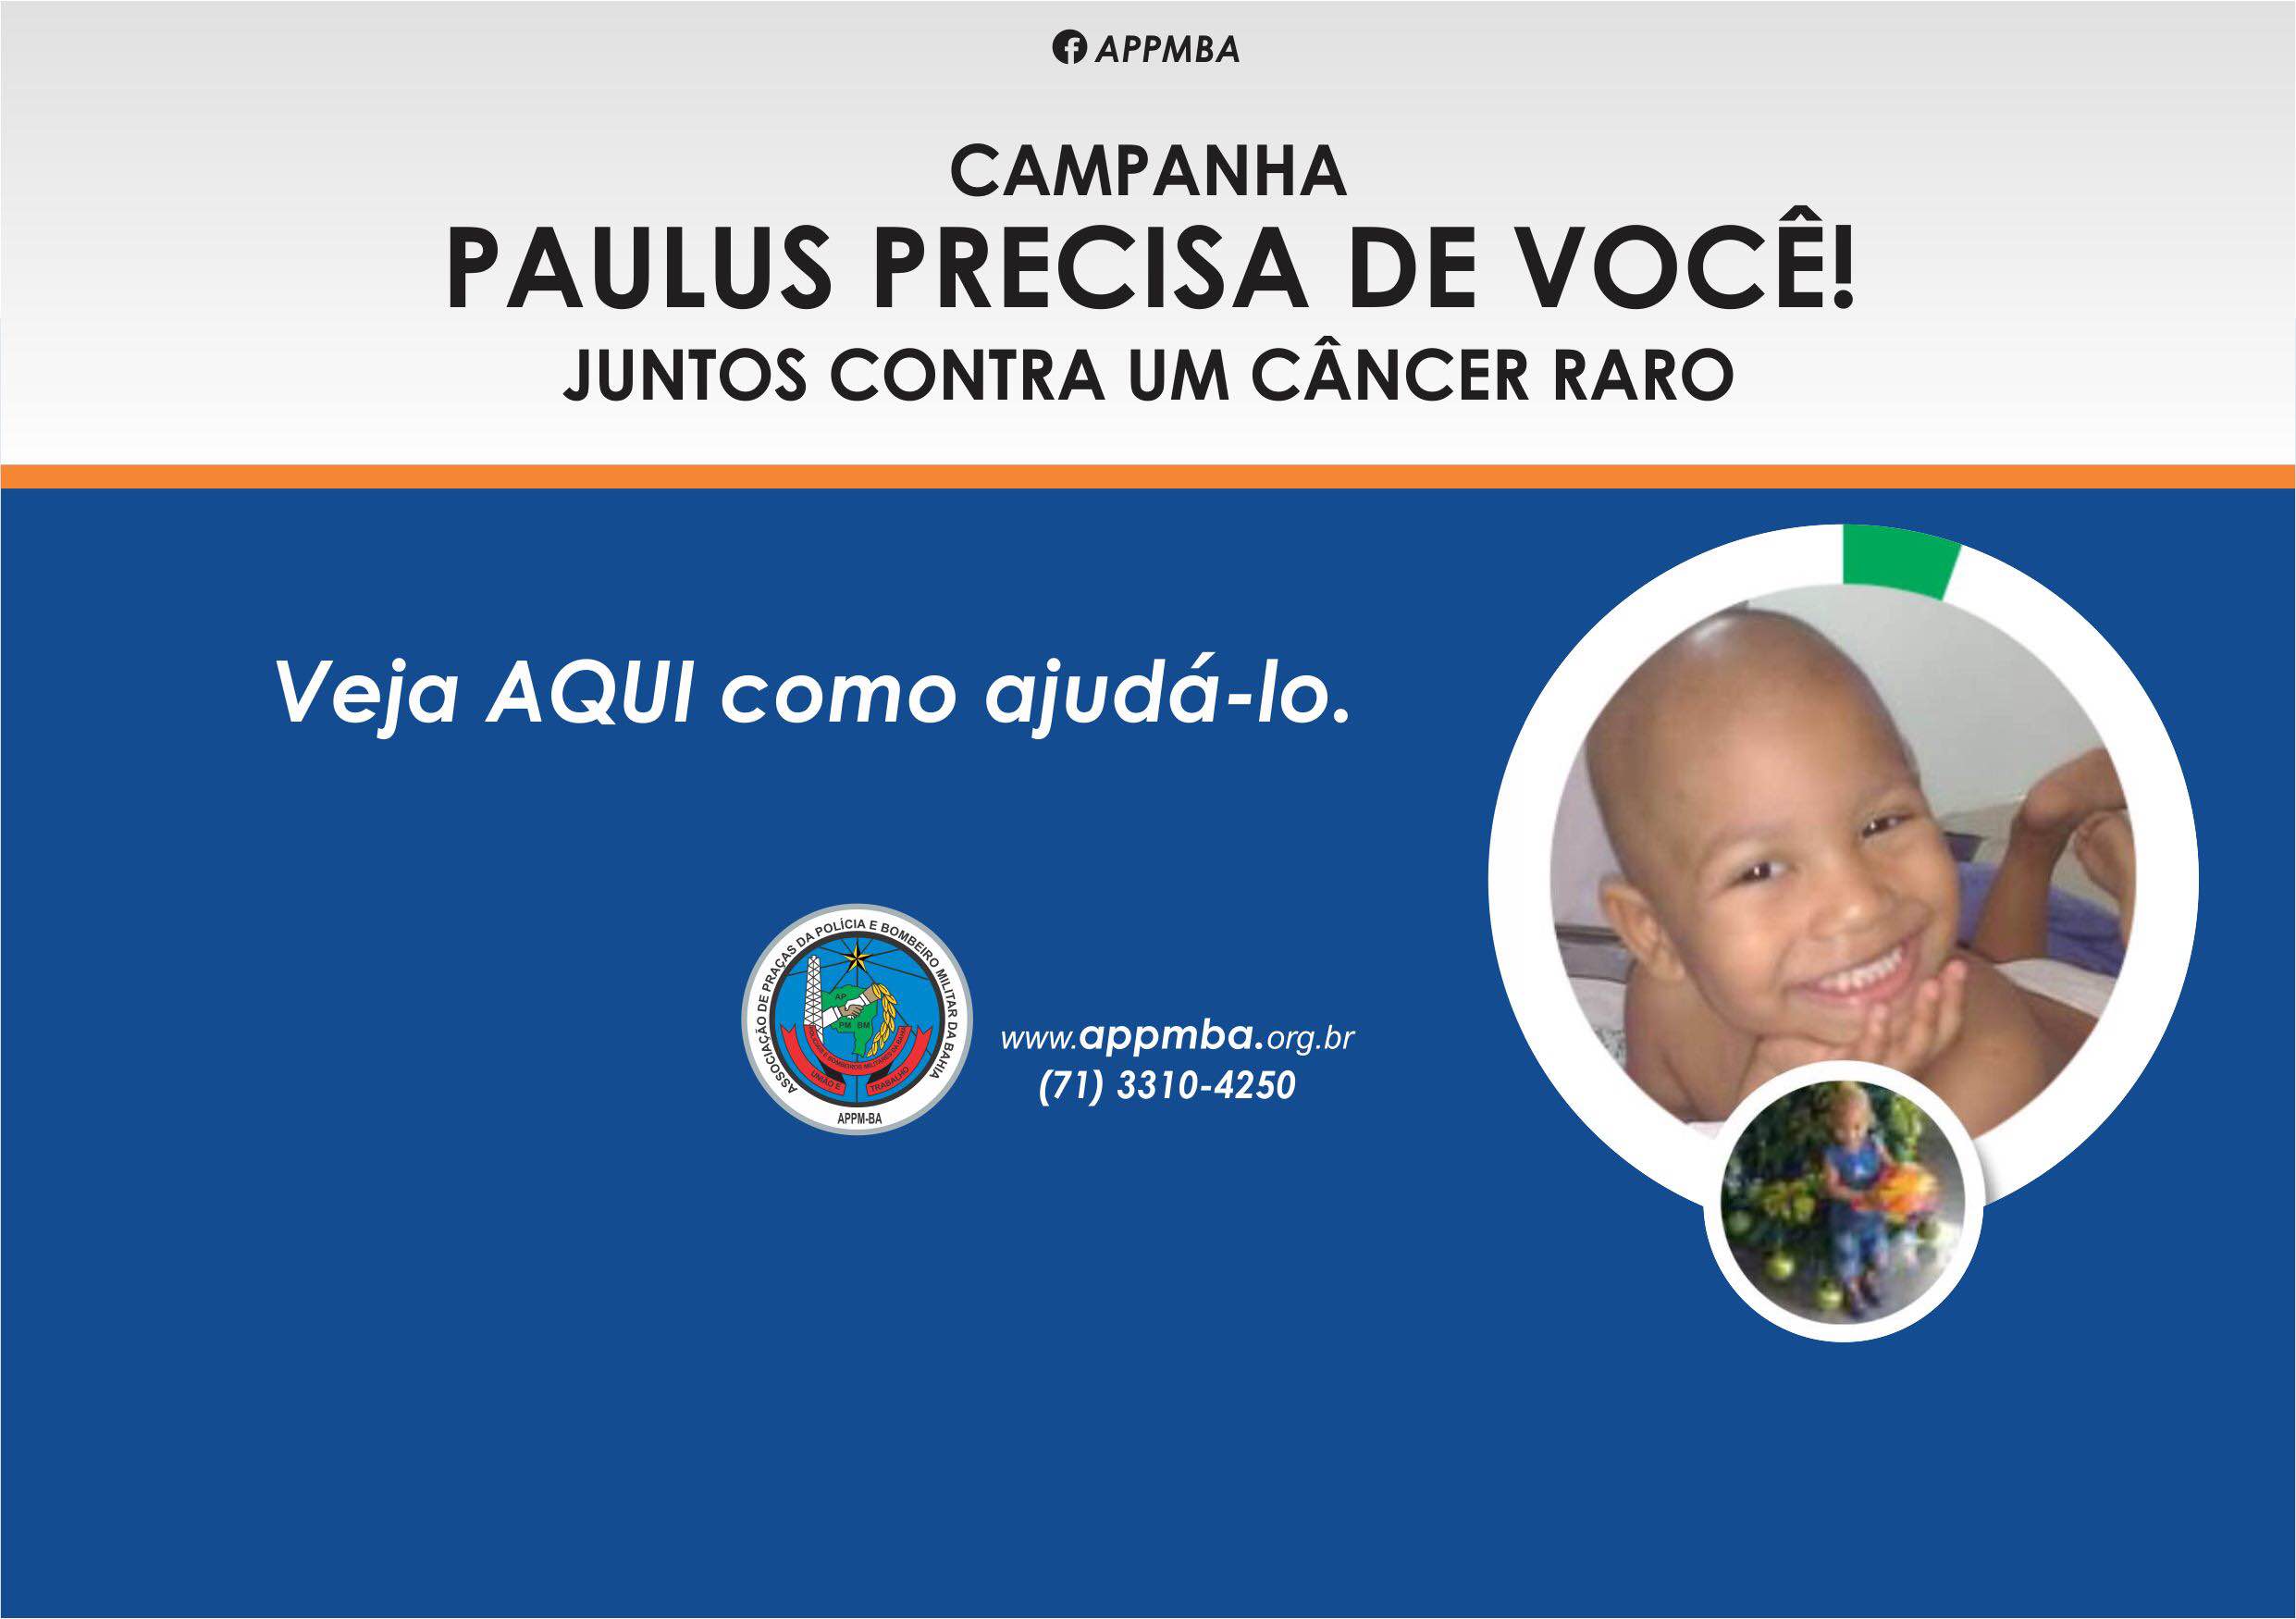 APPMBA participa de Campanha Solidária a favor do Paulus